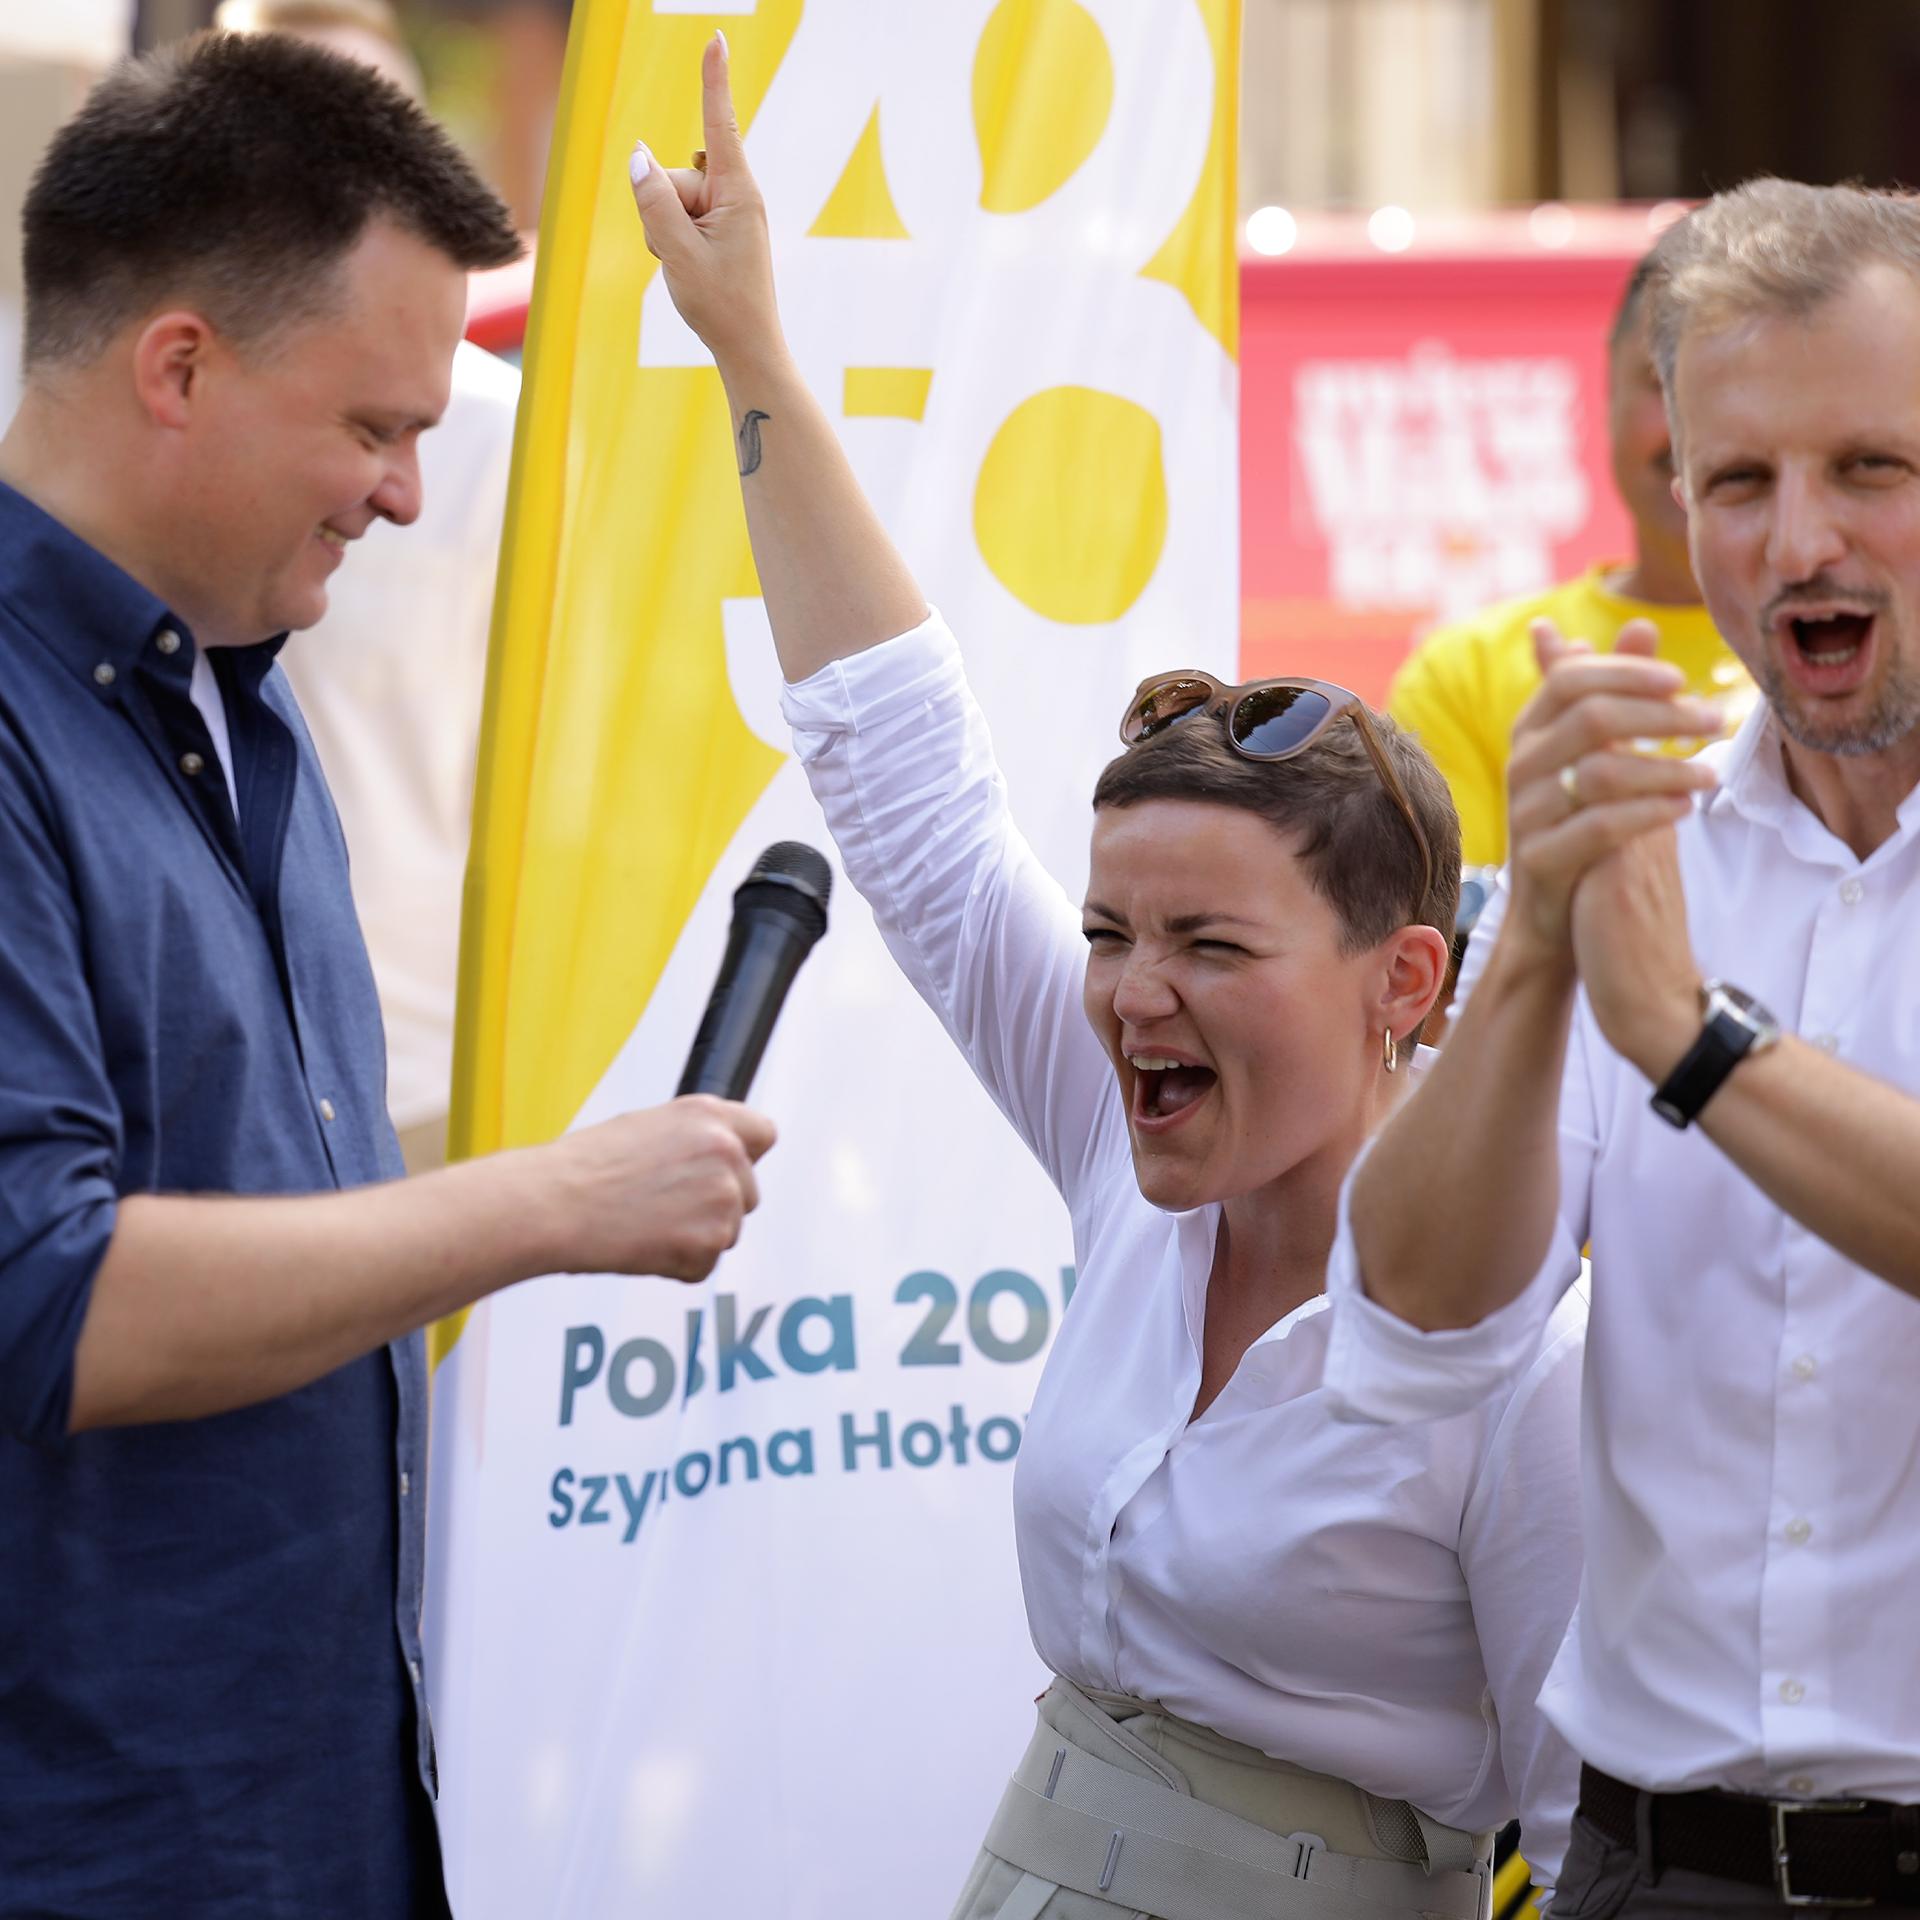 Marta Cienkowska podnosi rękę i radośnie krzyczy, obok stoi Szymon Hołownia z mikrofonem